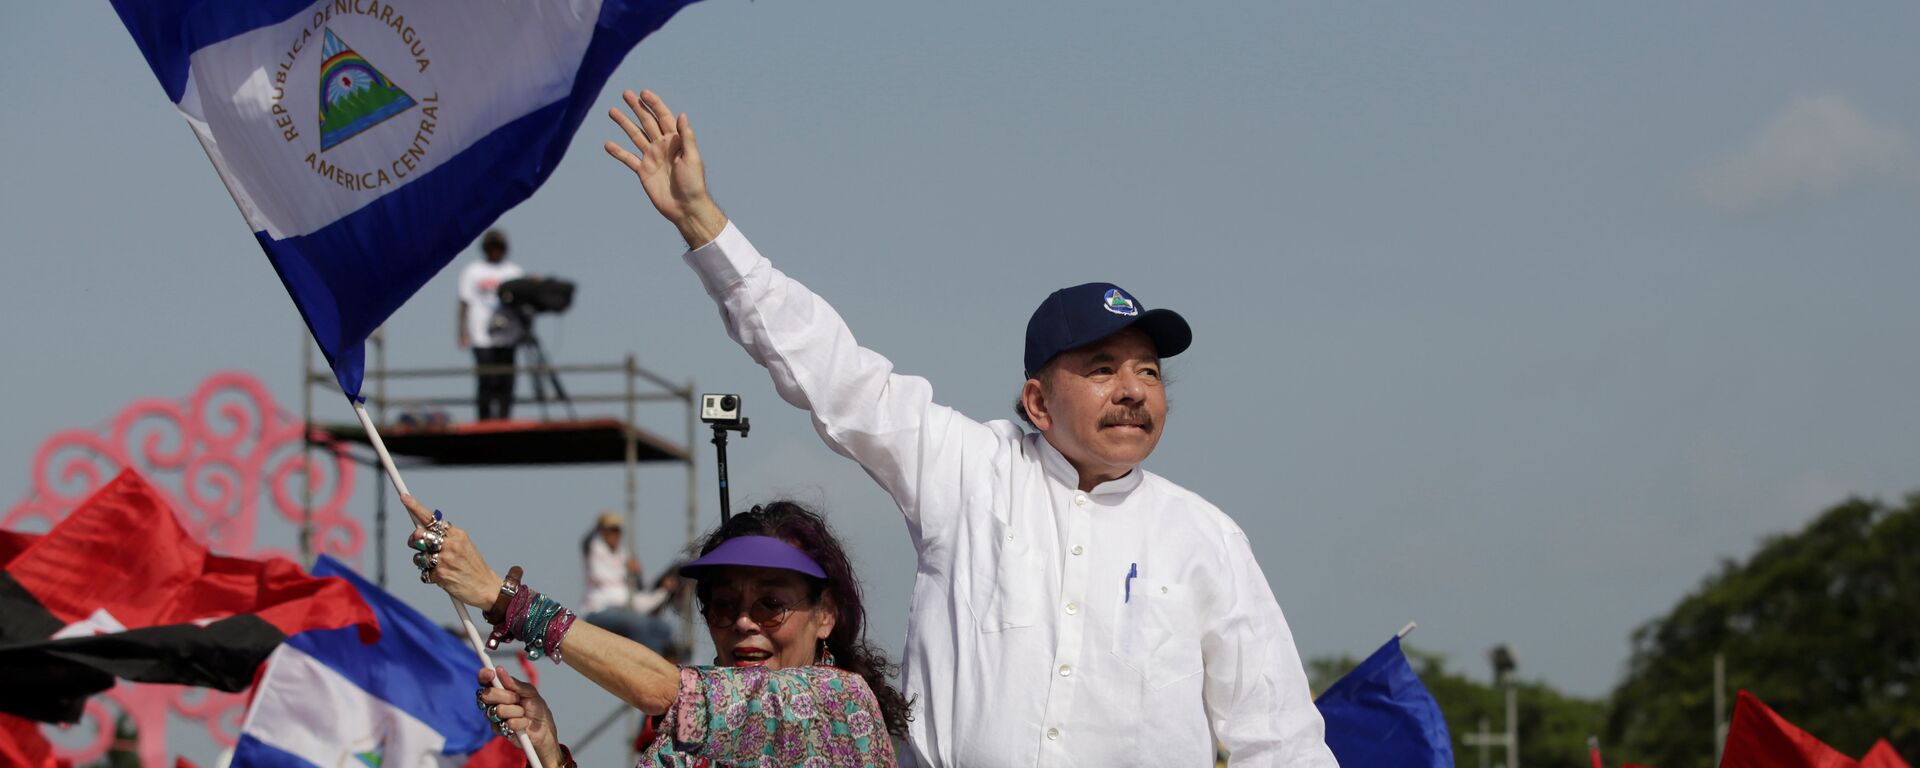 Nikaragua Devlet Başkanı Daniel Ortega - Sputnik Türkiye, 1920, 24.07.2018